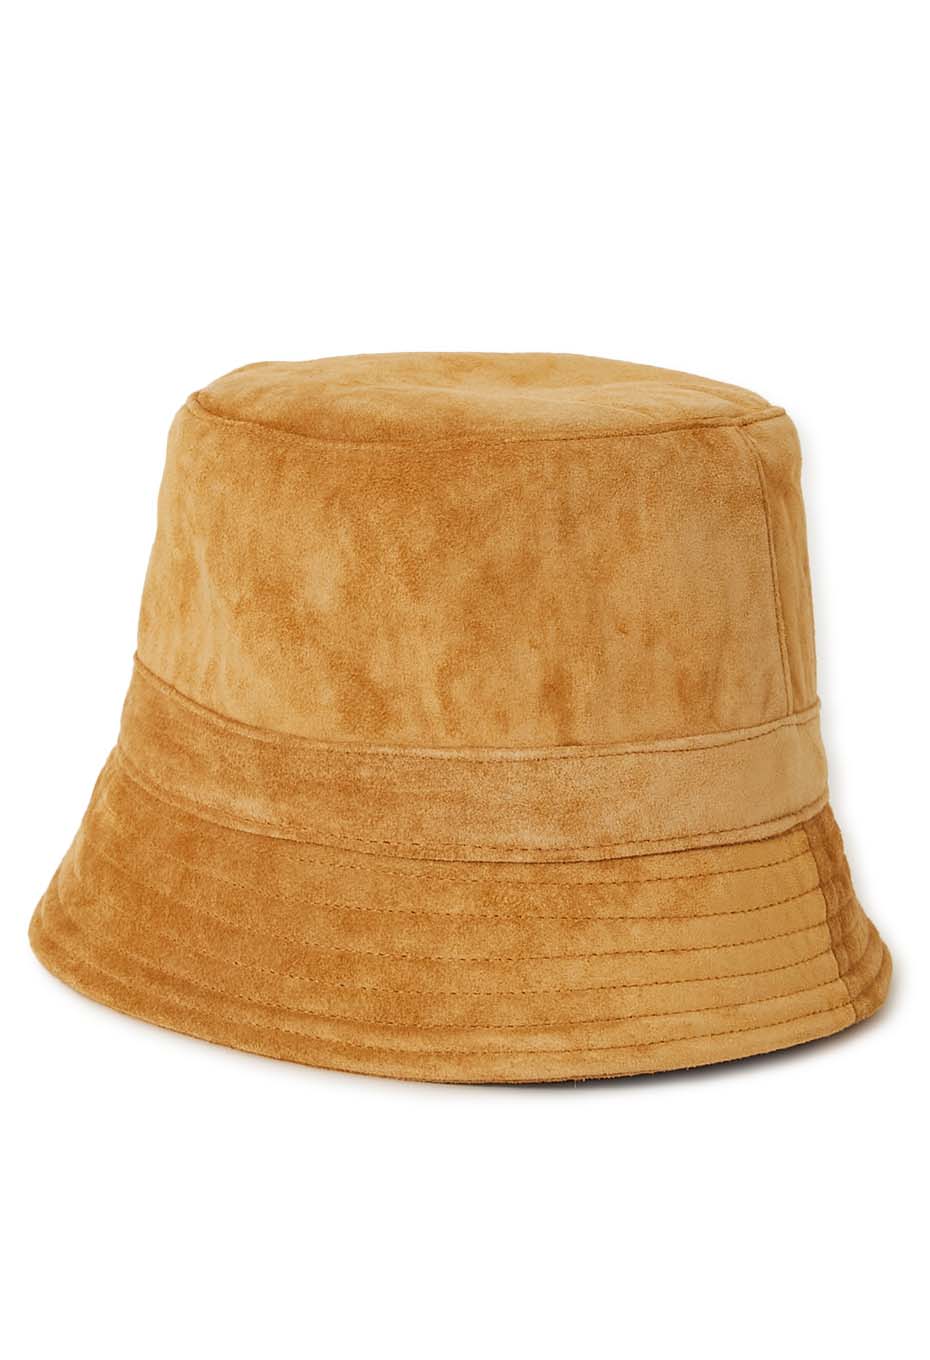 YUKETEN Italian hat/ PESCATORE